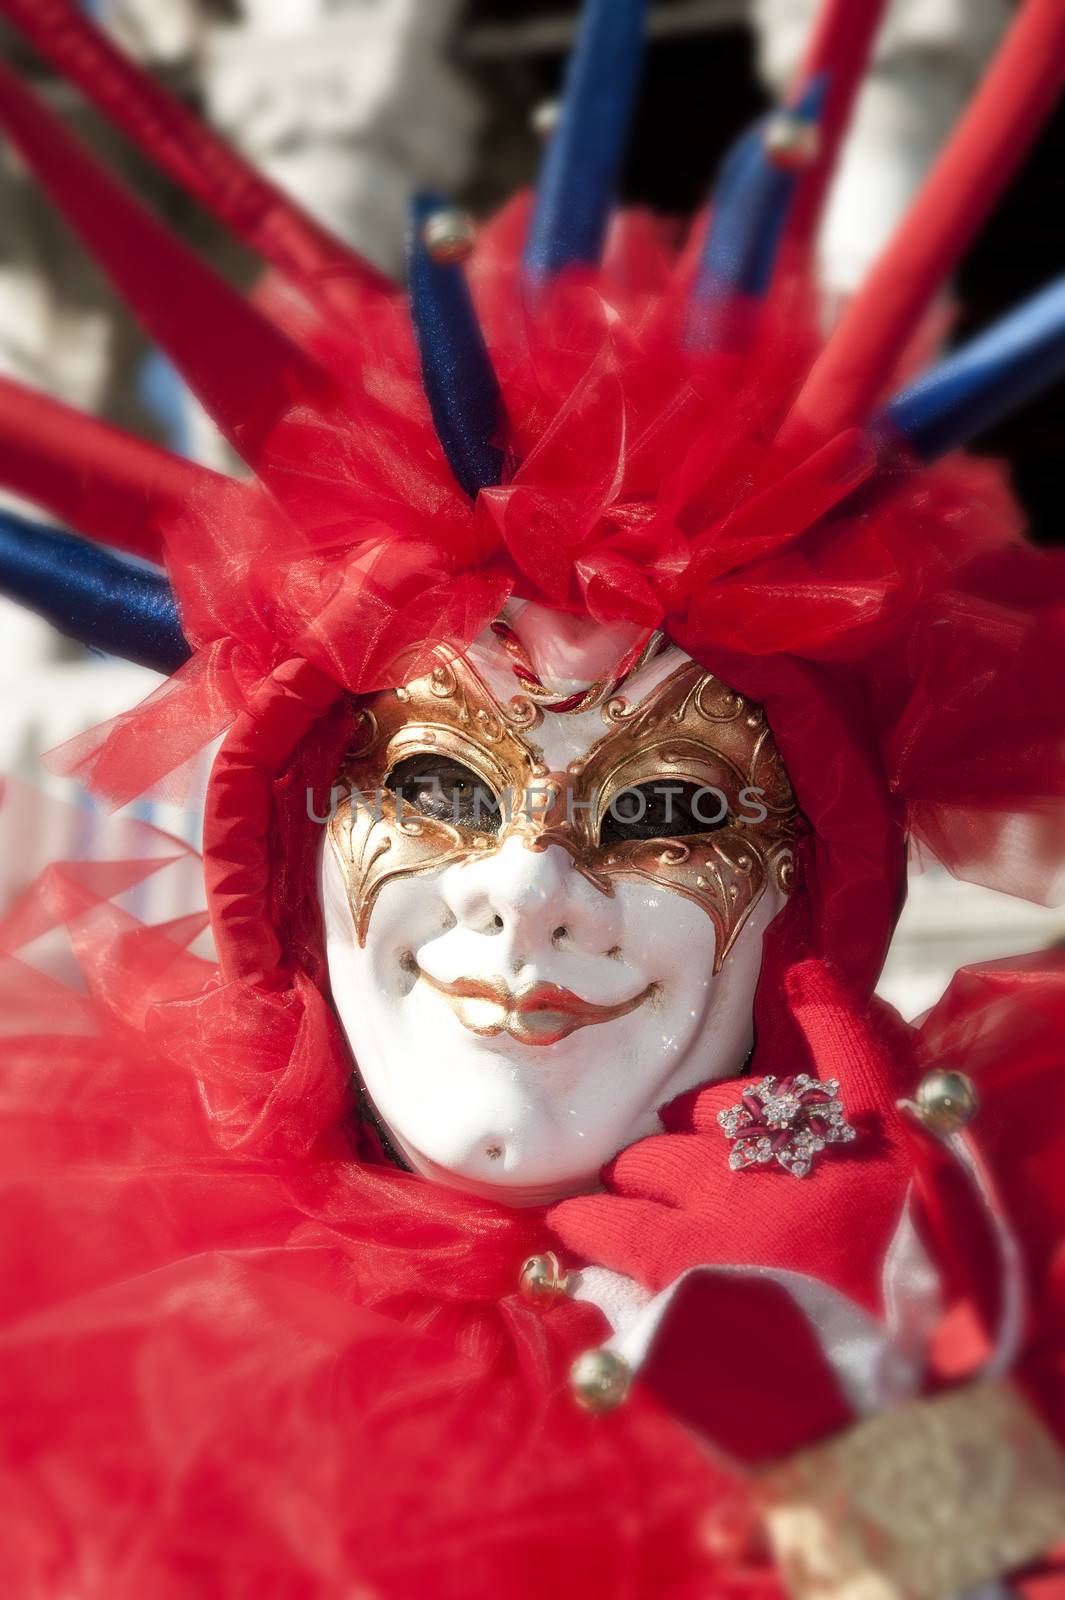 Venice carnival mask by cla78